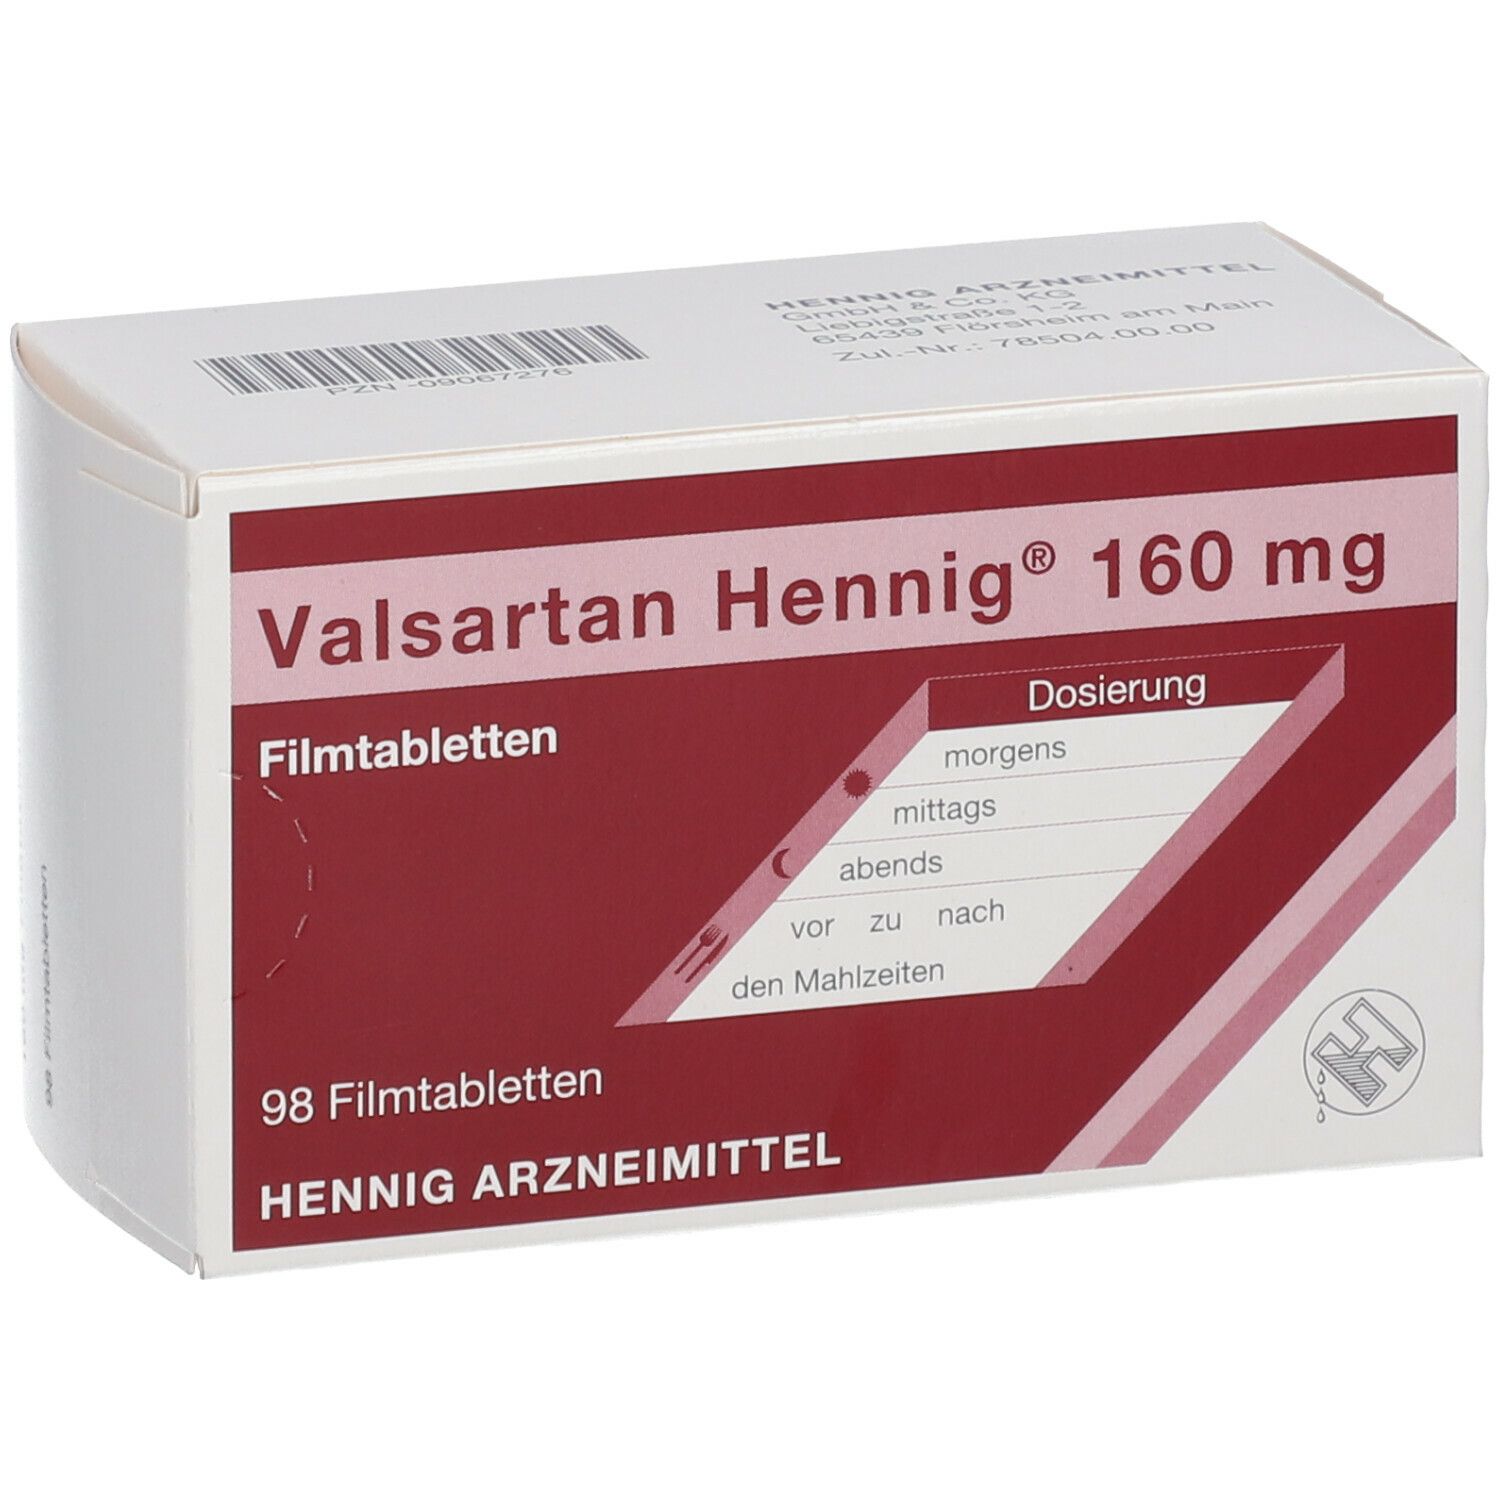 Valsartan Hennig® 160 mg